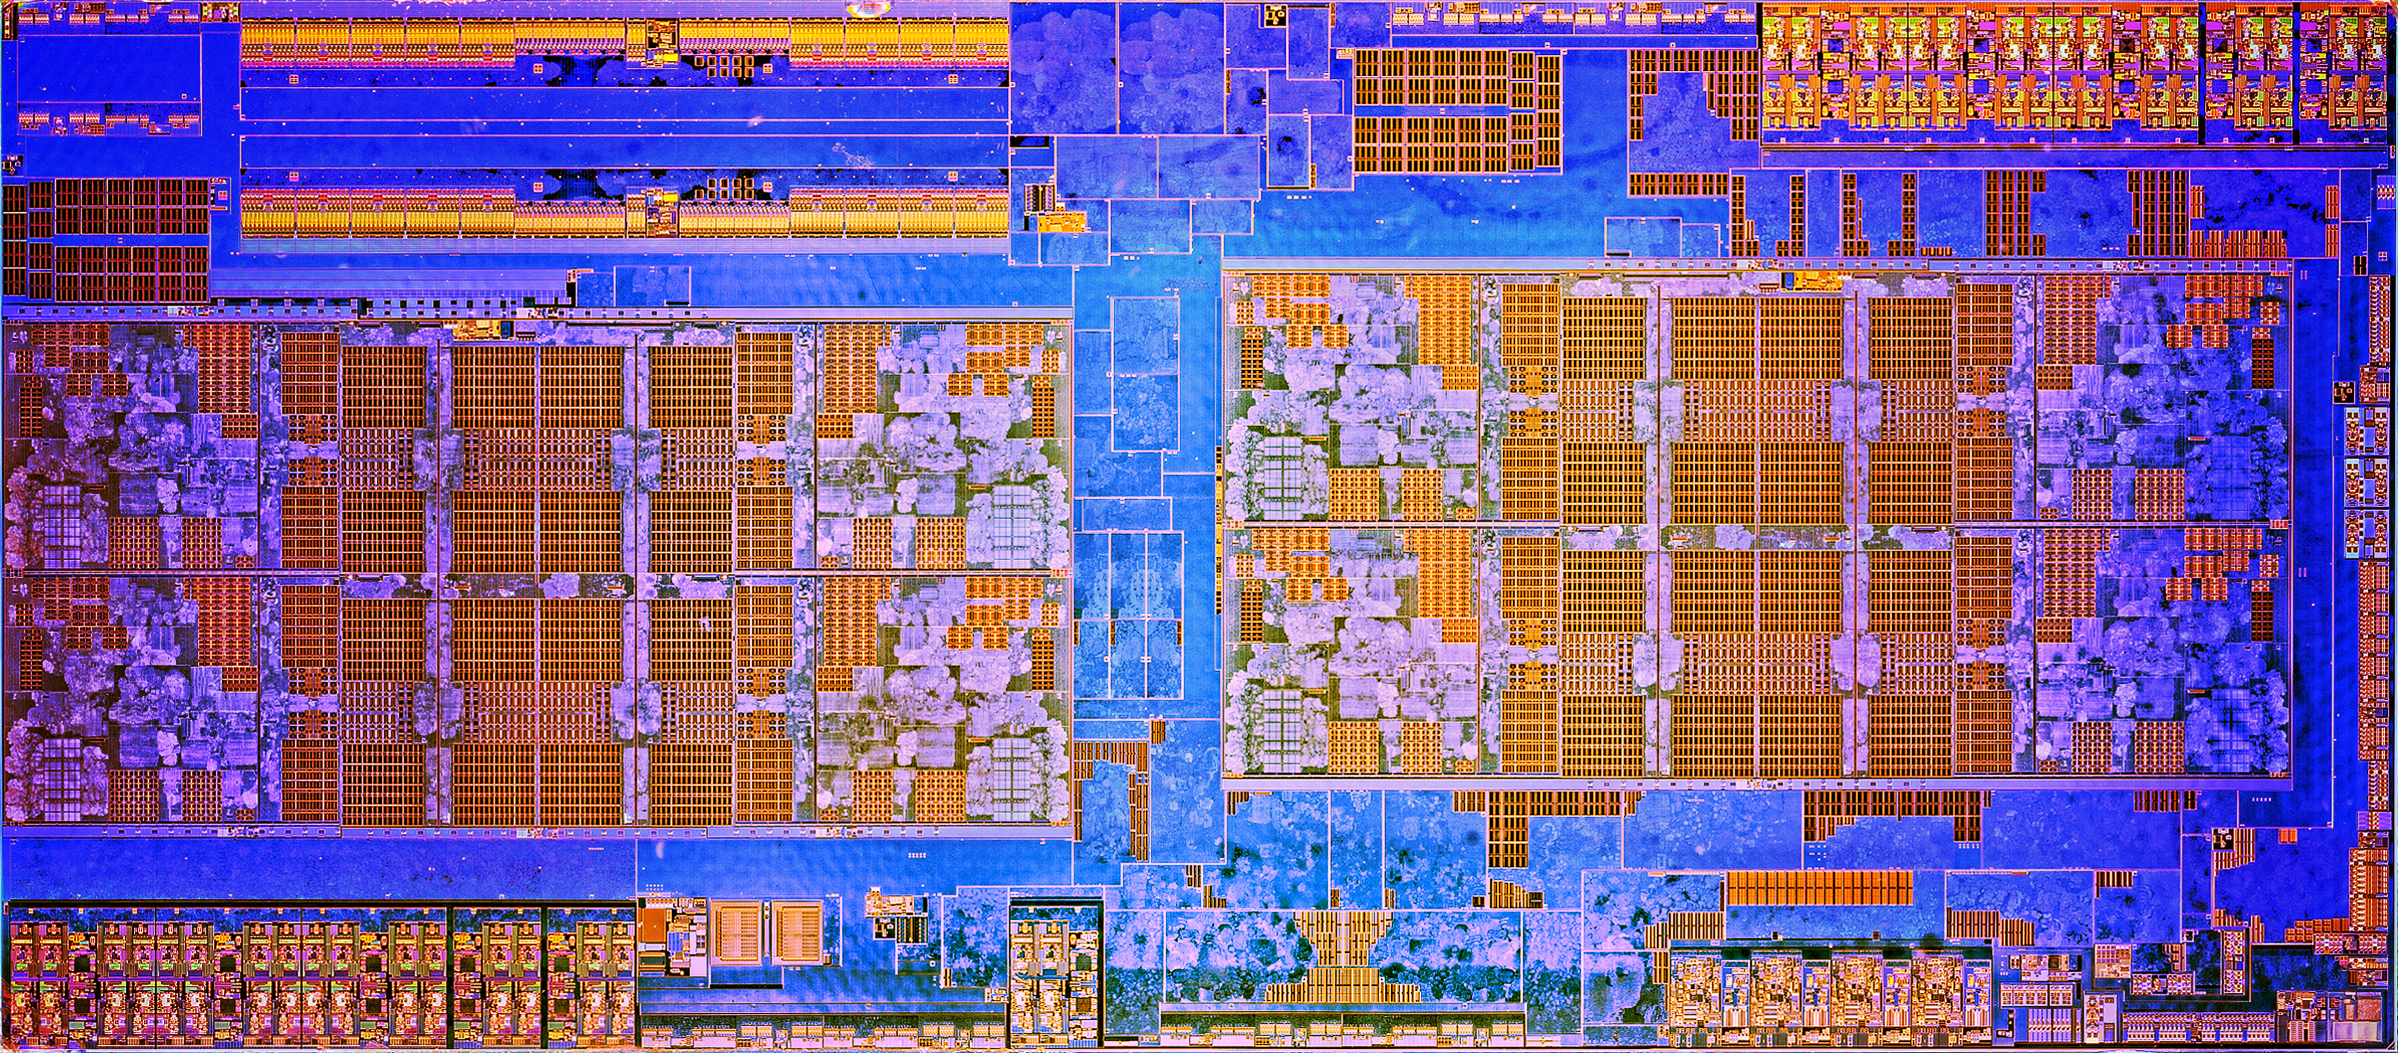 Будущее за многокристальными графическими процессорами? 